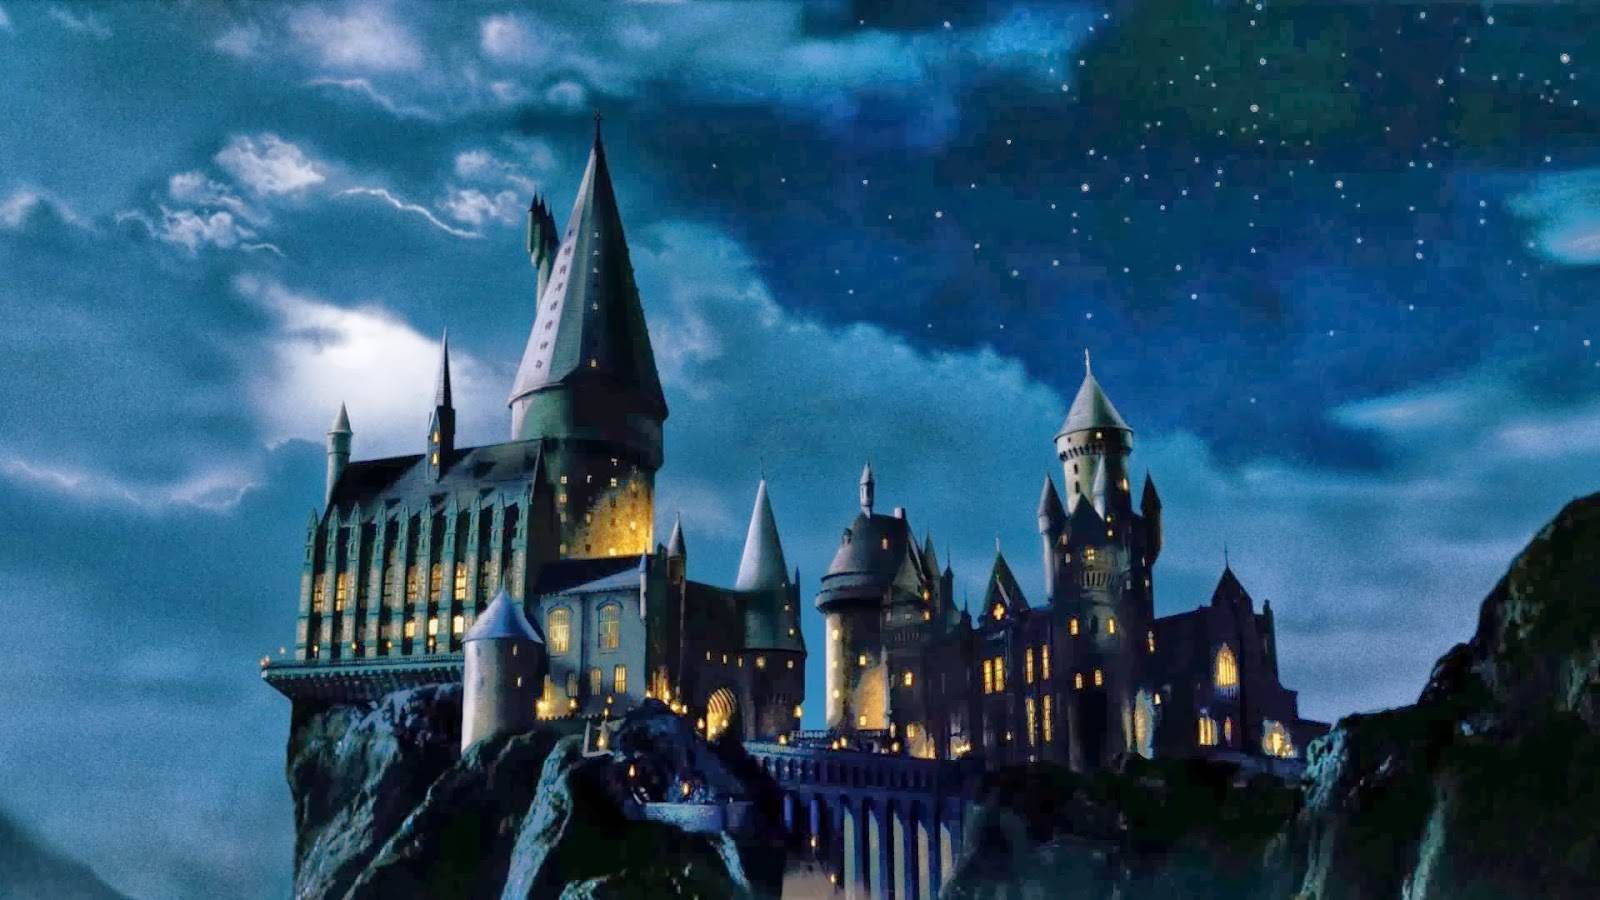 Hình nền Hogwarts Harry Potter trên WallpaperDog - Một trong các hình nền phong phú về Harry Potter được tìm thấy trên WallpaperDog, Hình nền Hogwarts Harry Potter sẽ khiến bạn trải nghiệm những giây phút đầy màu sắc và huyền bí tại trường phù thủy.